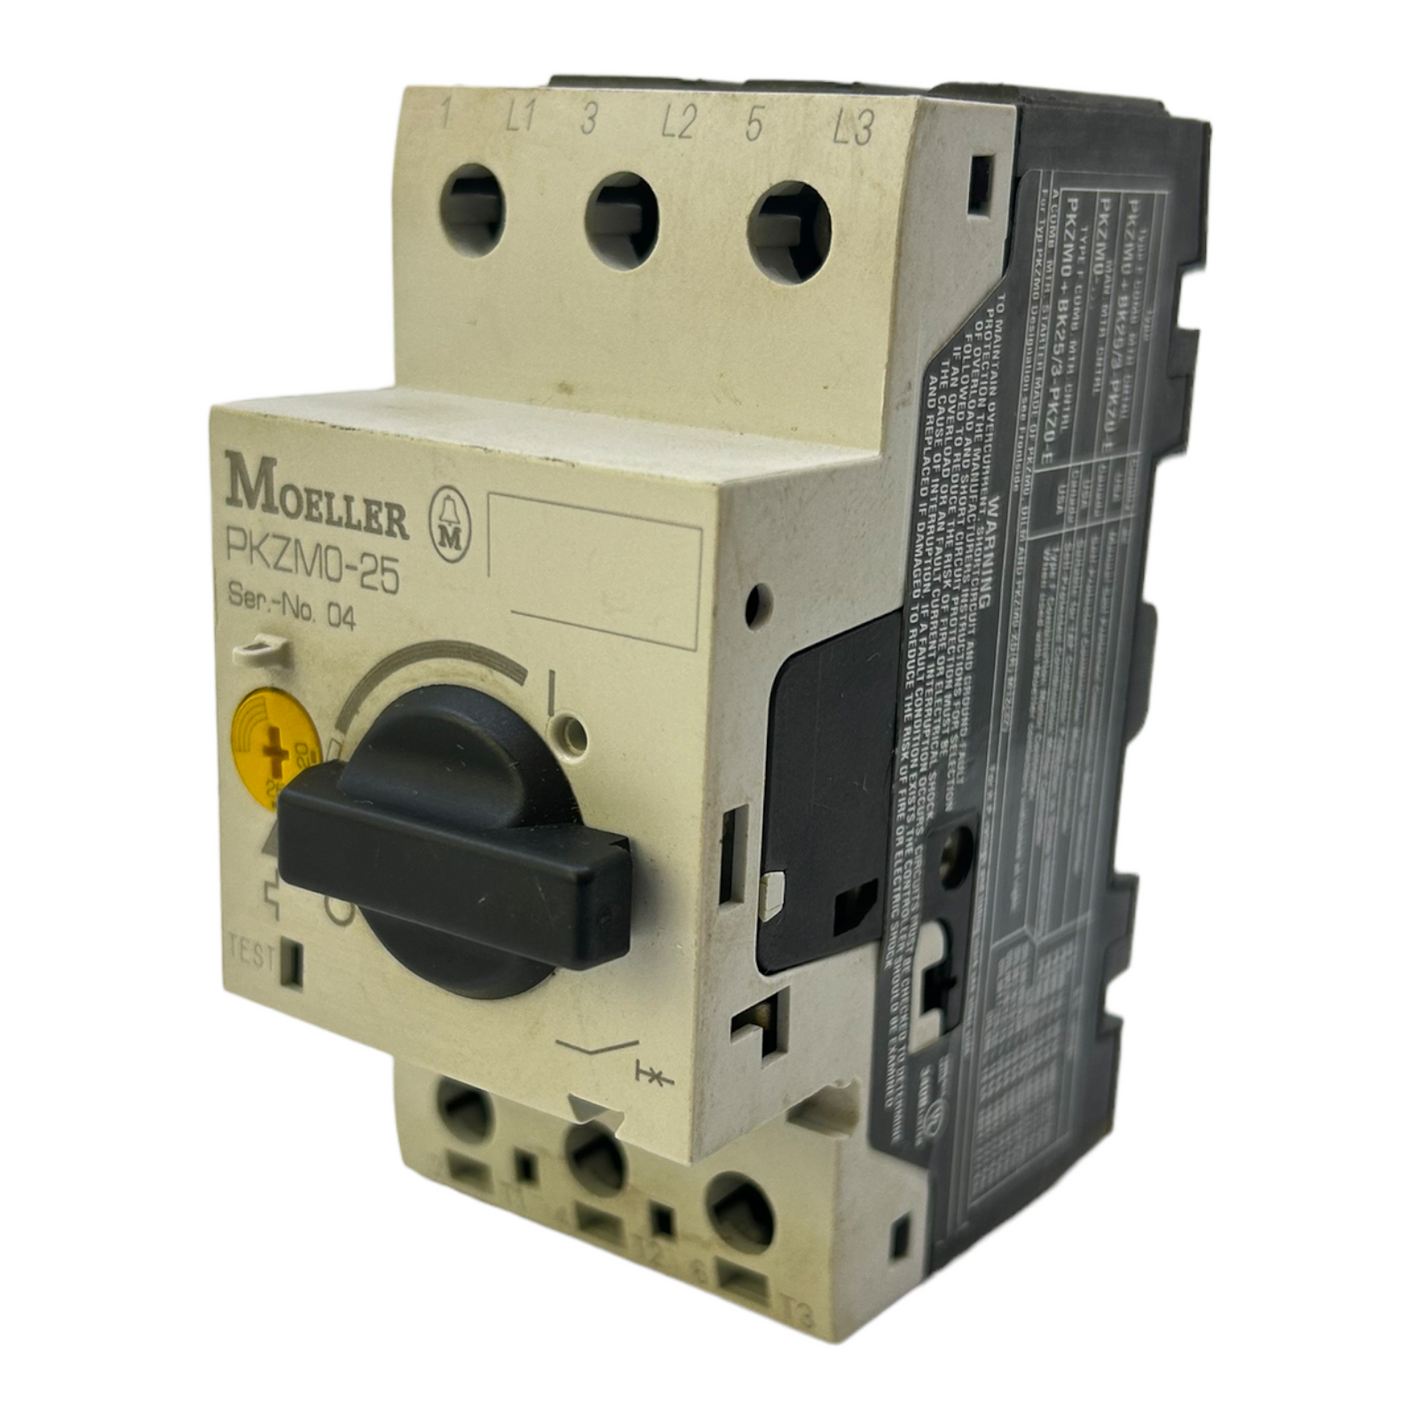 Klöckner Moeller PKZM0-25 motor protection switch for industrial use 50/60Hz